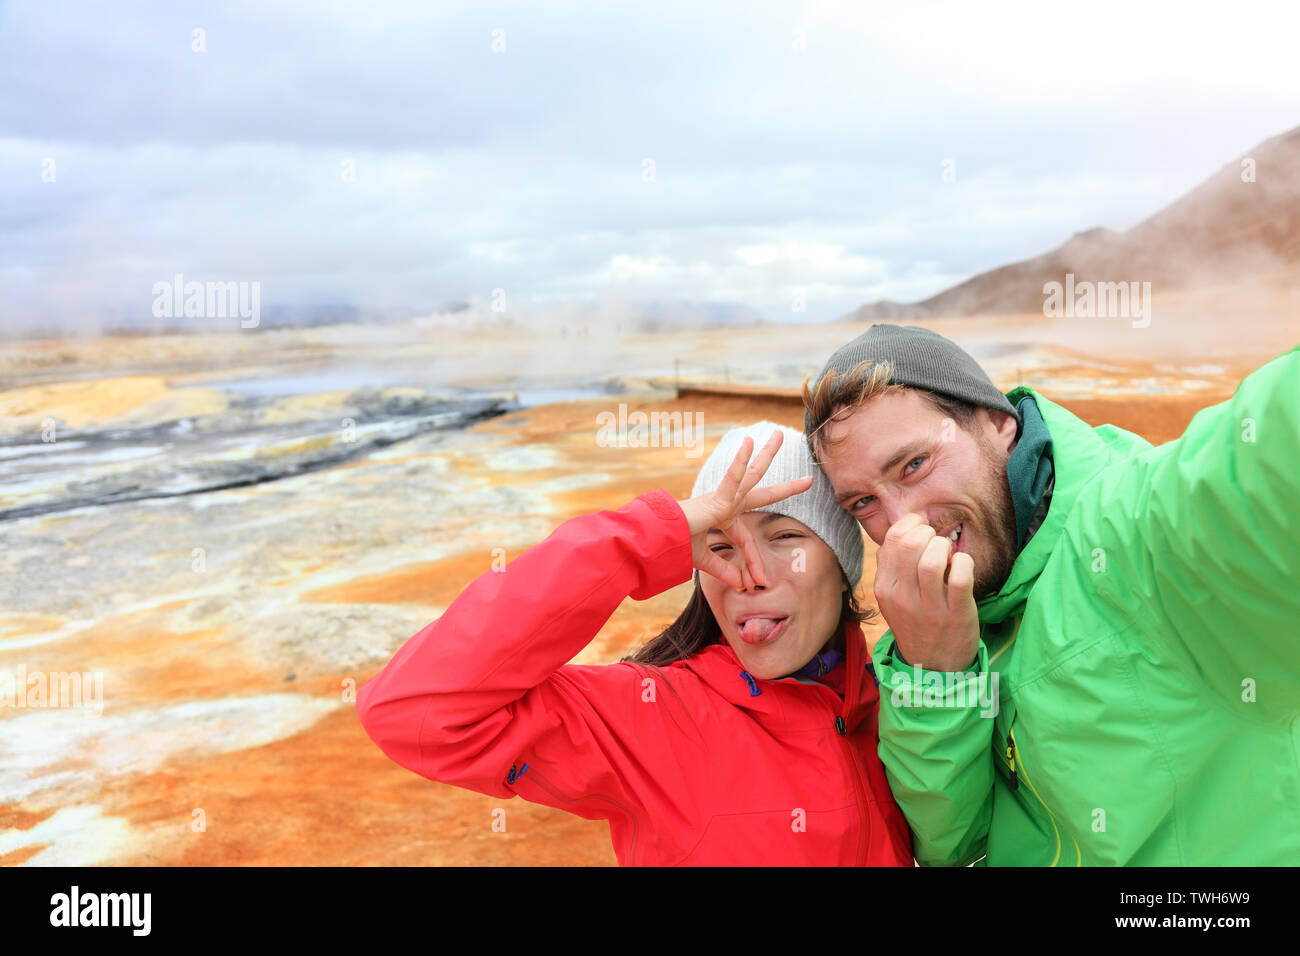 Island lustige Touristen paar Spaß unter selfie Foto mit im Landmark Ziel: namafjall Hverarondor mudpot hverir auch als Schlammbad hot spring oder fumarole. Geruch von Schwefel auf Vulkan Stockfoto